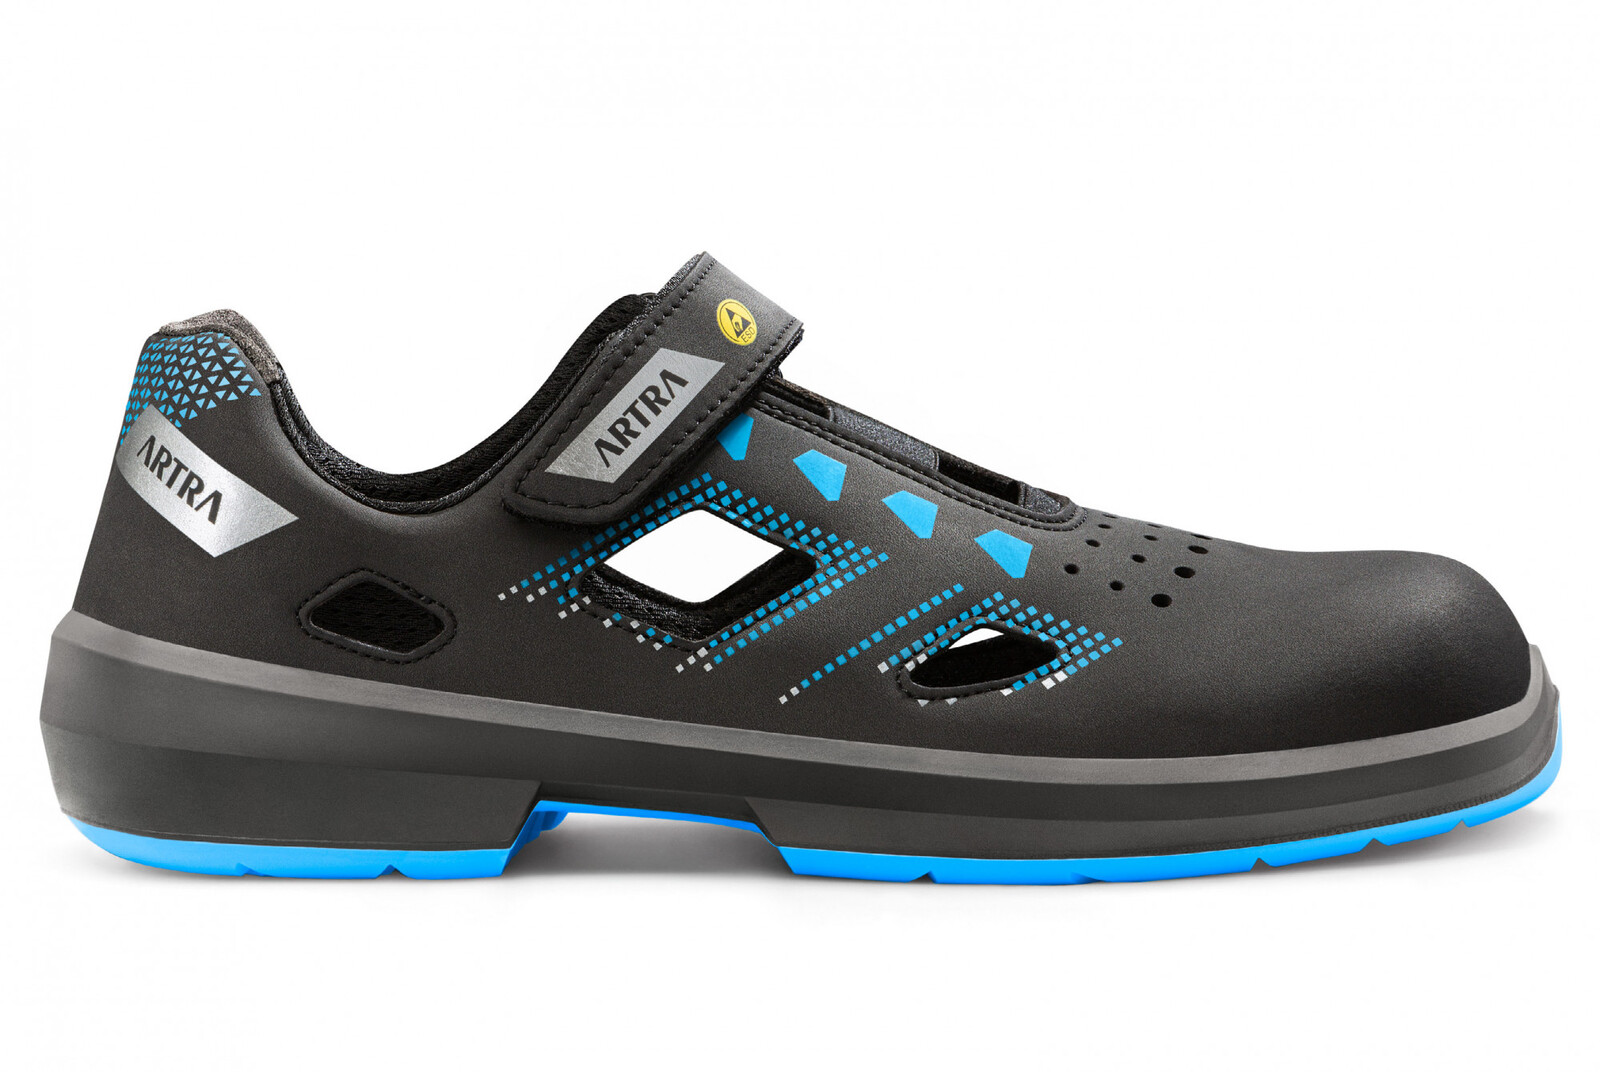 Bezpečnostné sandále Artra Arzo 805 619090 S1P SRC ESD MF - veľkosť: 39, farba: čierna/modrá